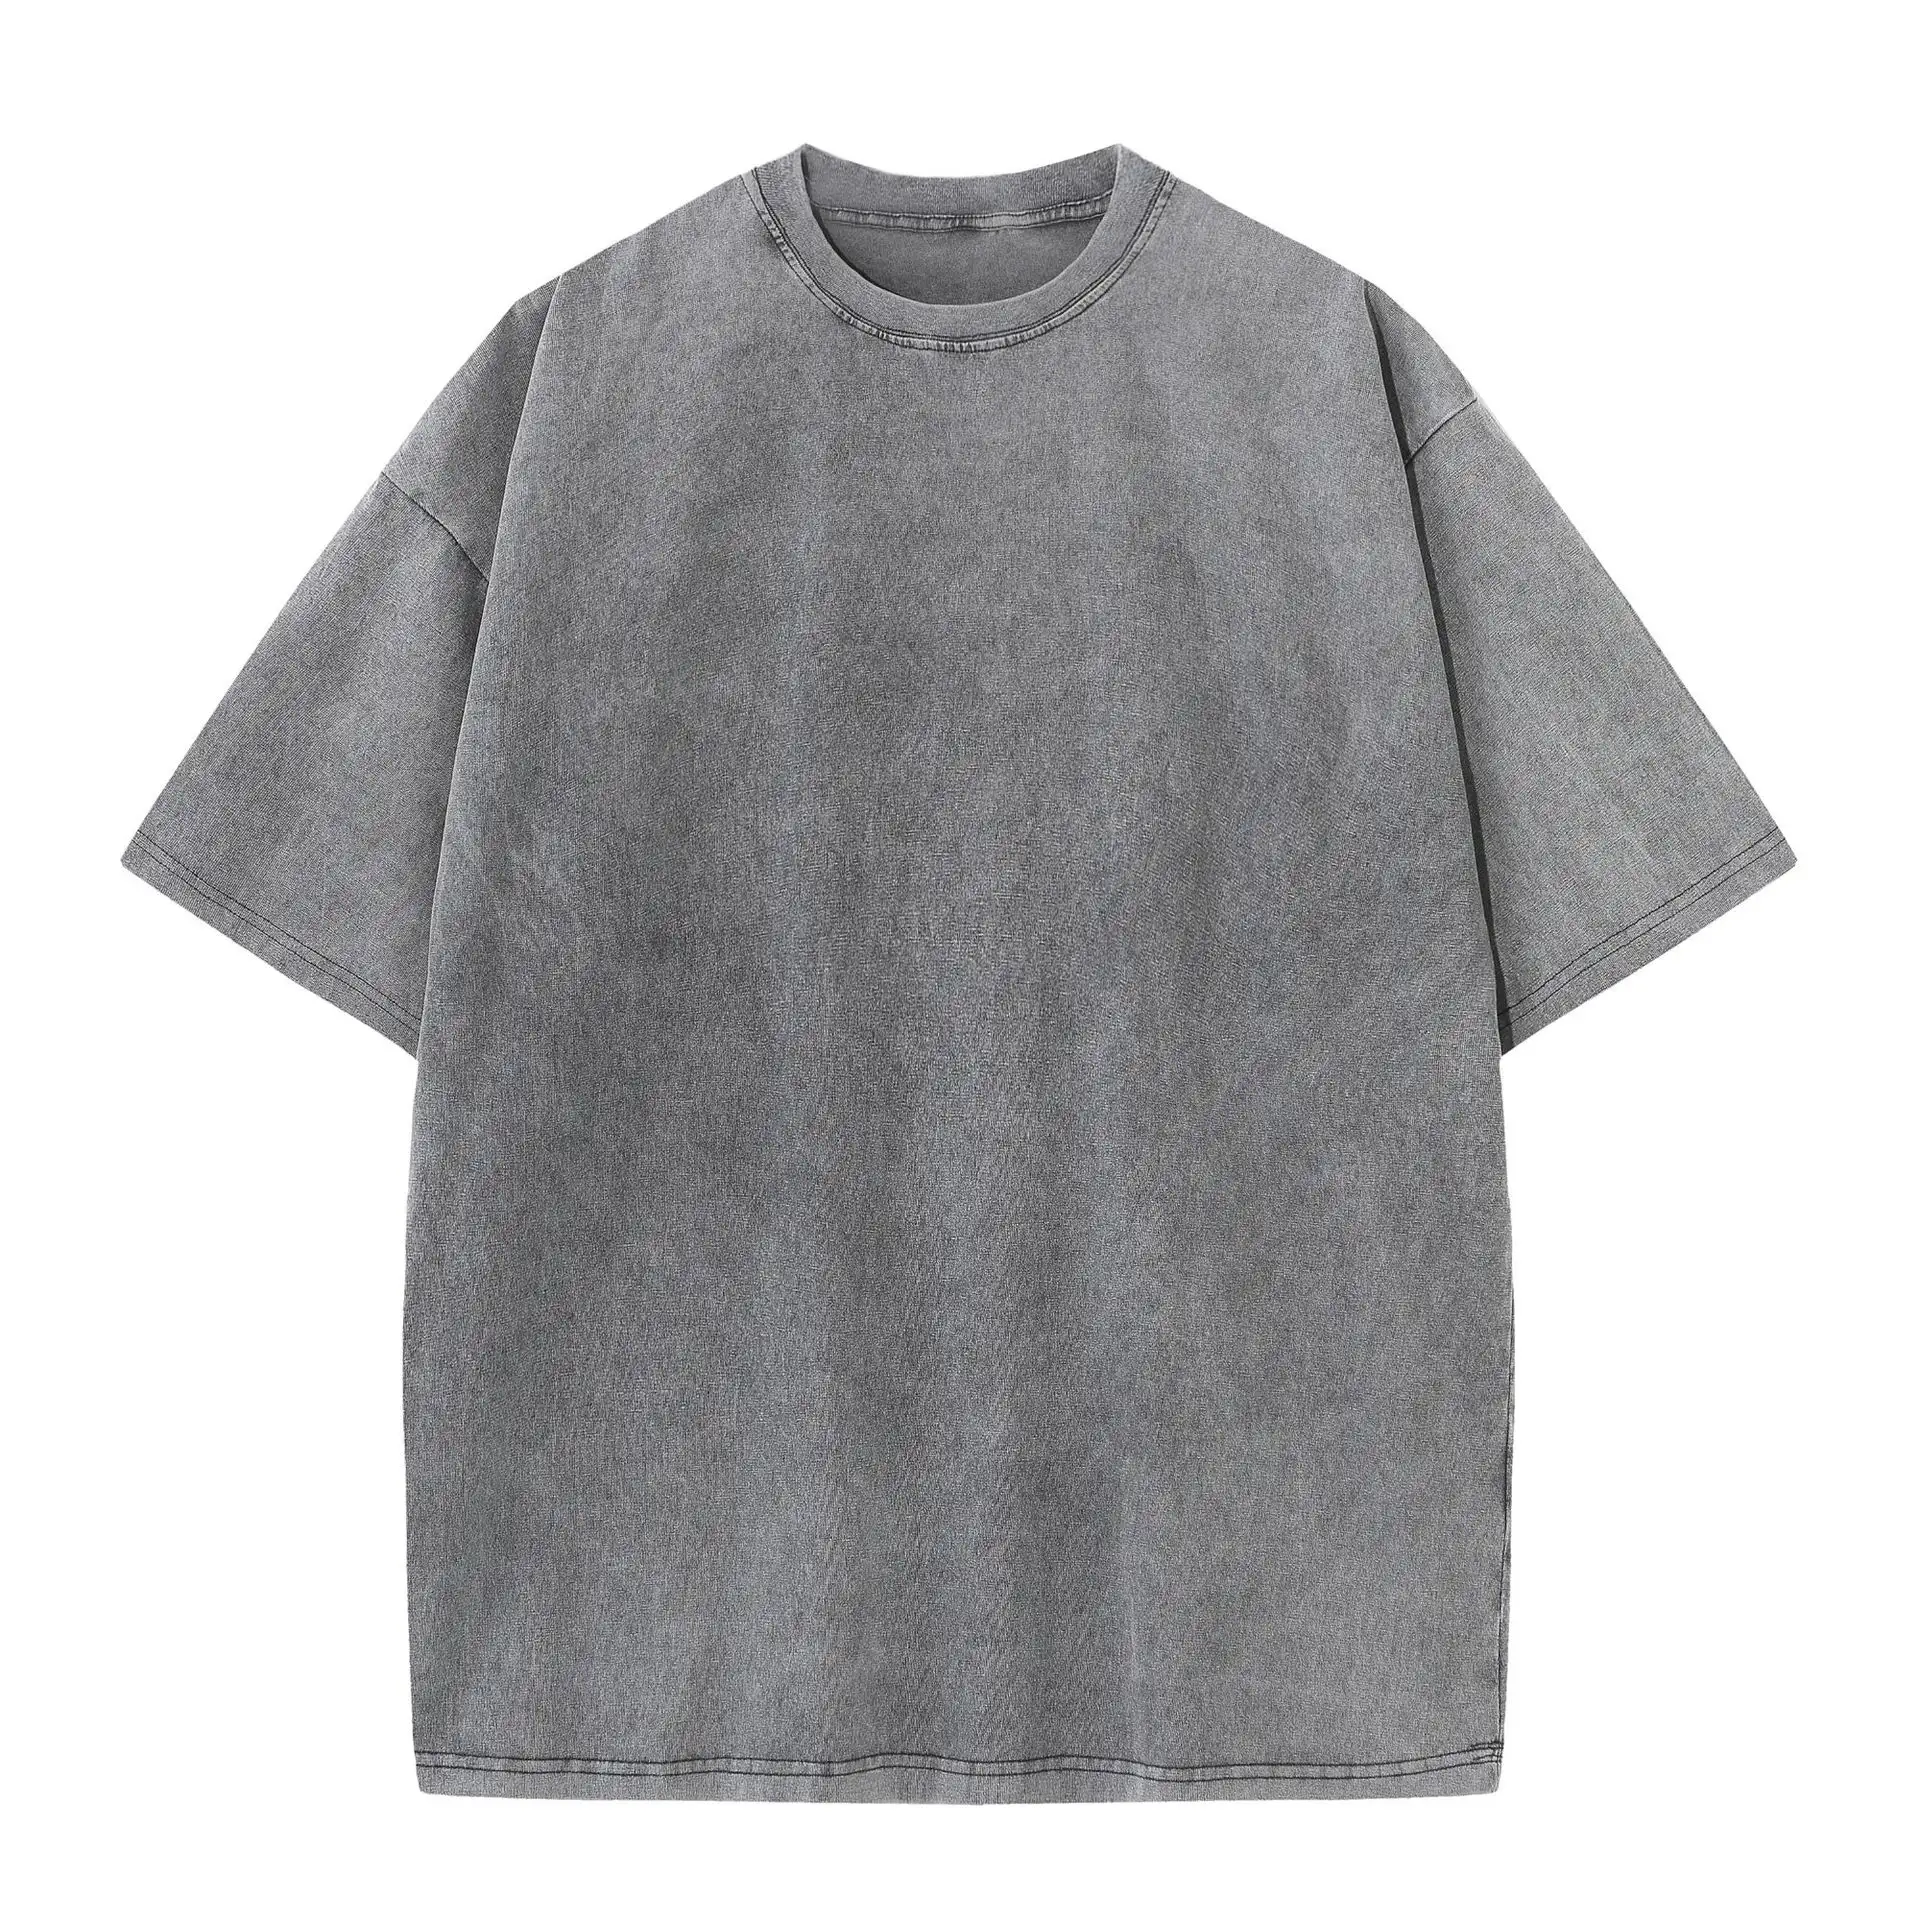 T-shirt da uomo con lavaggio acido Vintage Unisex oversize all'ingrosso in bianco puro cotone sbiadito T-shirt da uomo